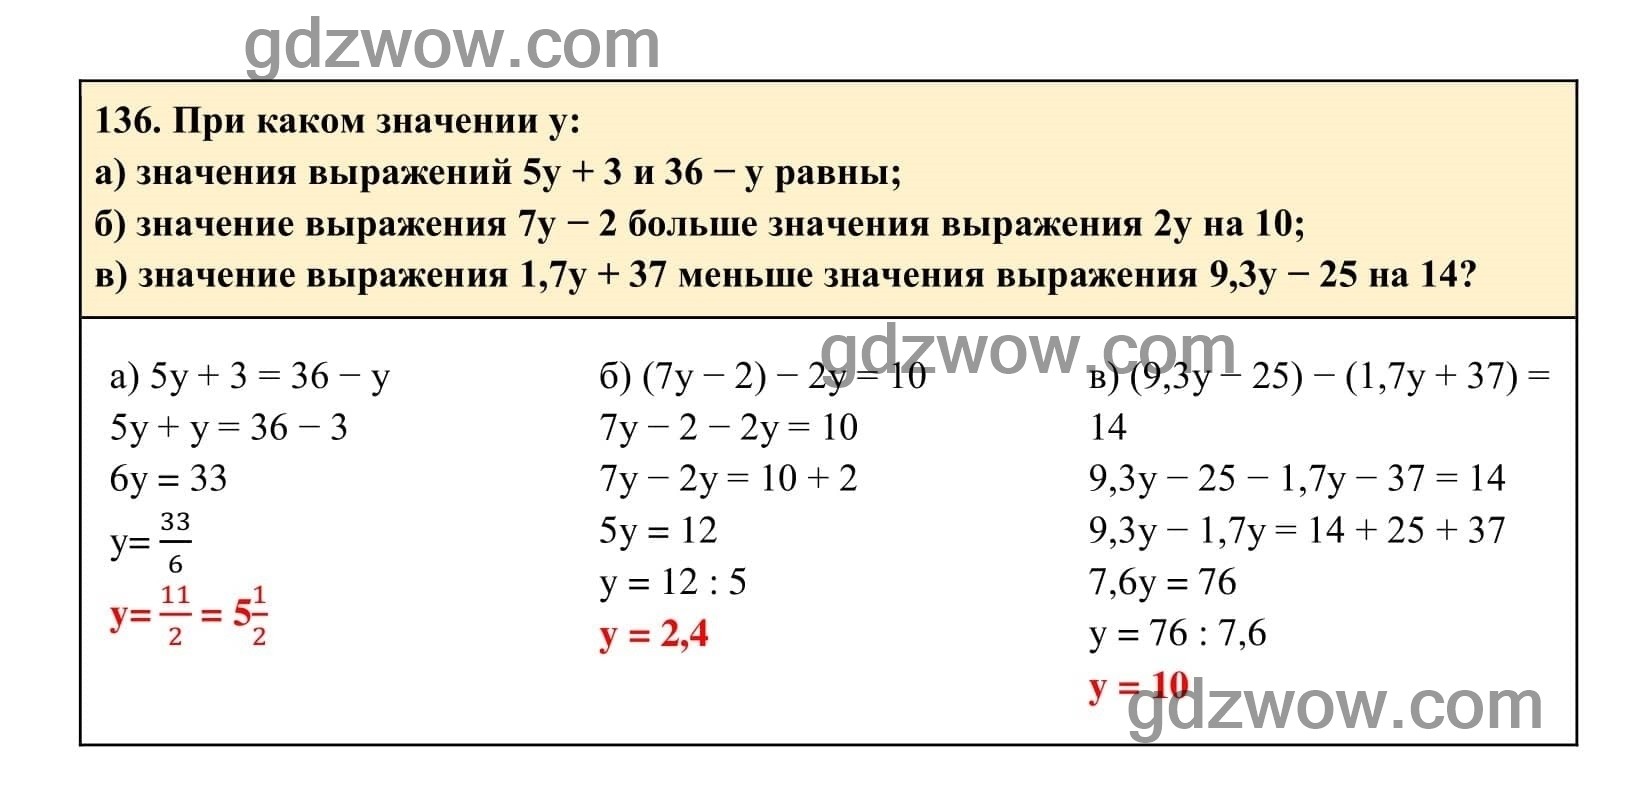 Упражнение 136 - ГДЗ по Алгебре 7 класс Учебник Макарычев (решебник) - GDZwow